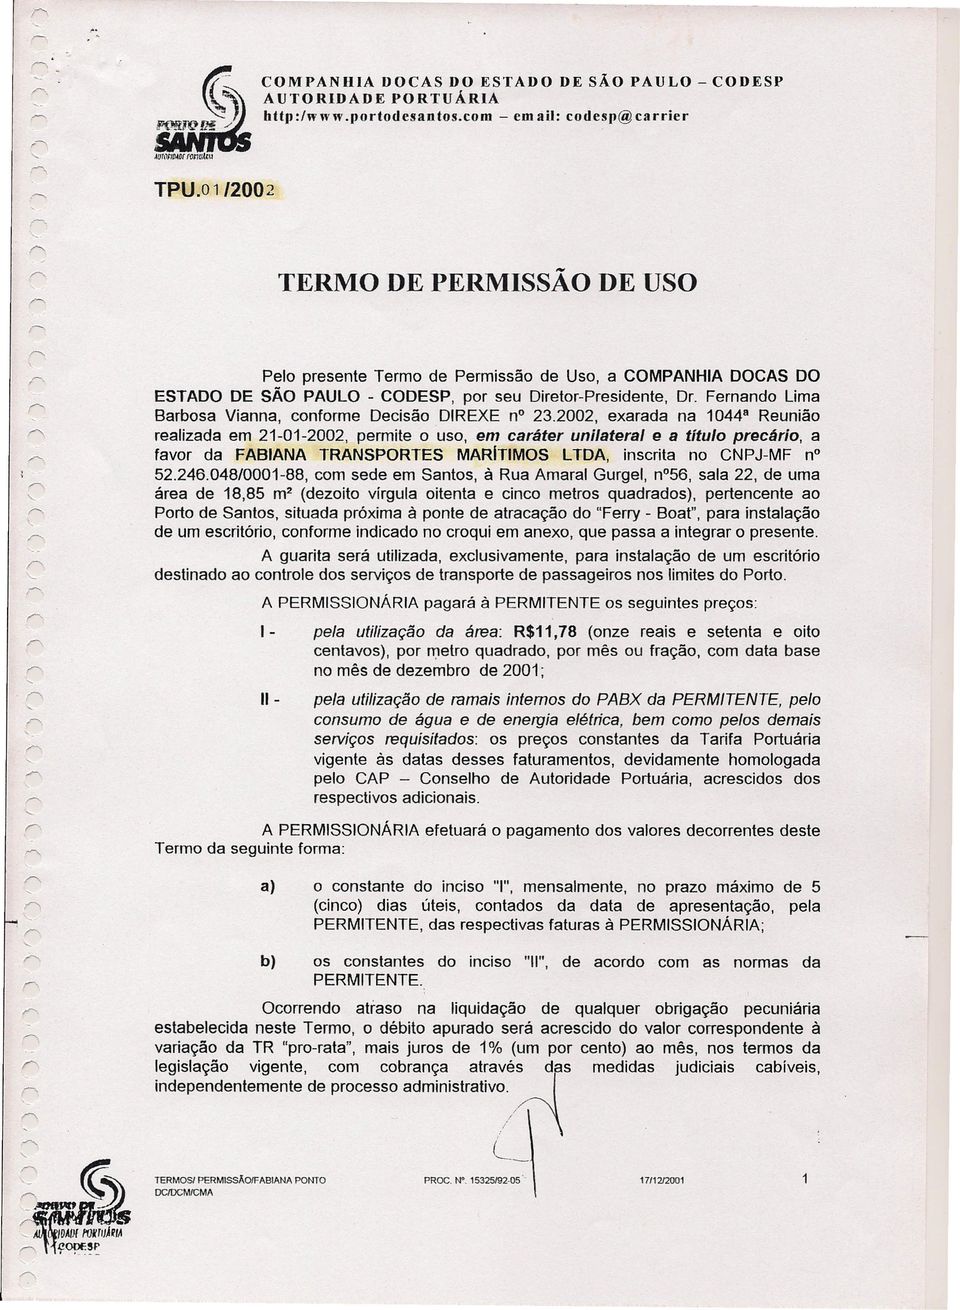 Fernando lima Barbosa Vianna, conforme Decisão DIREXE n? 23.